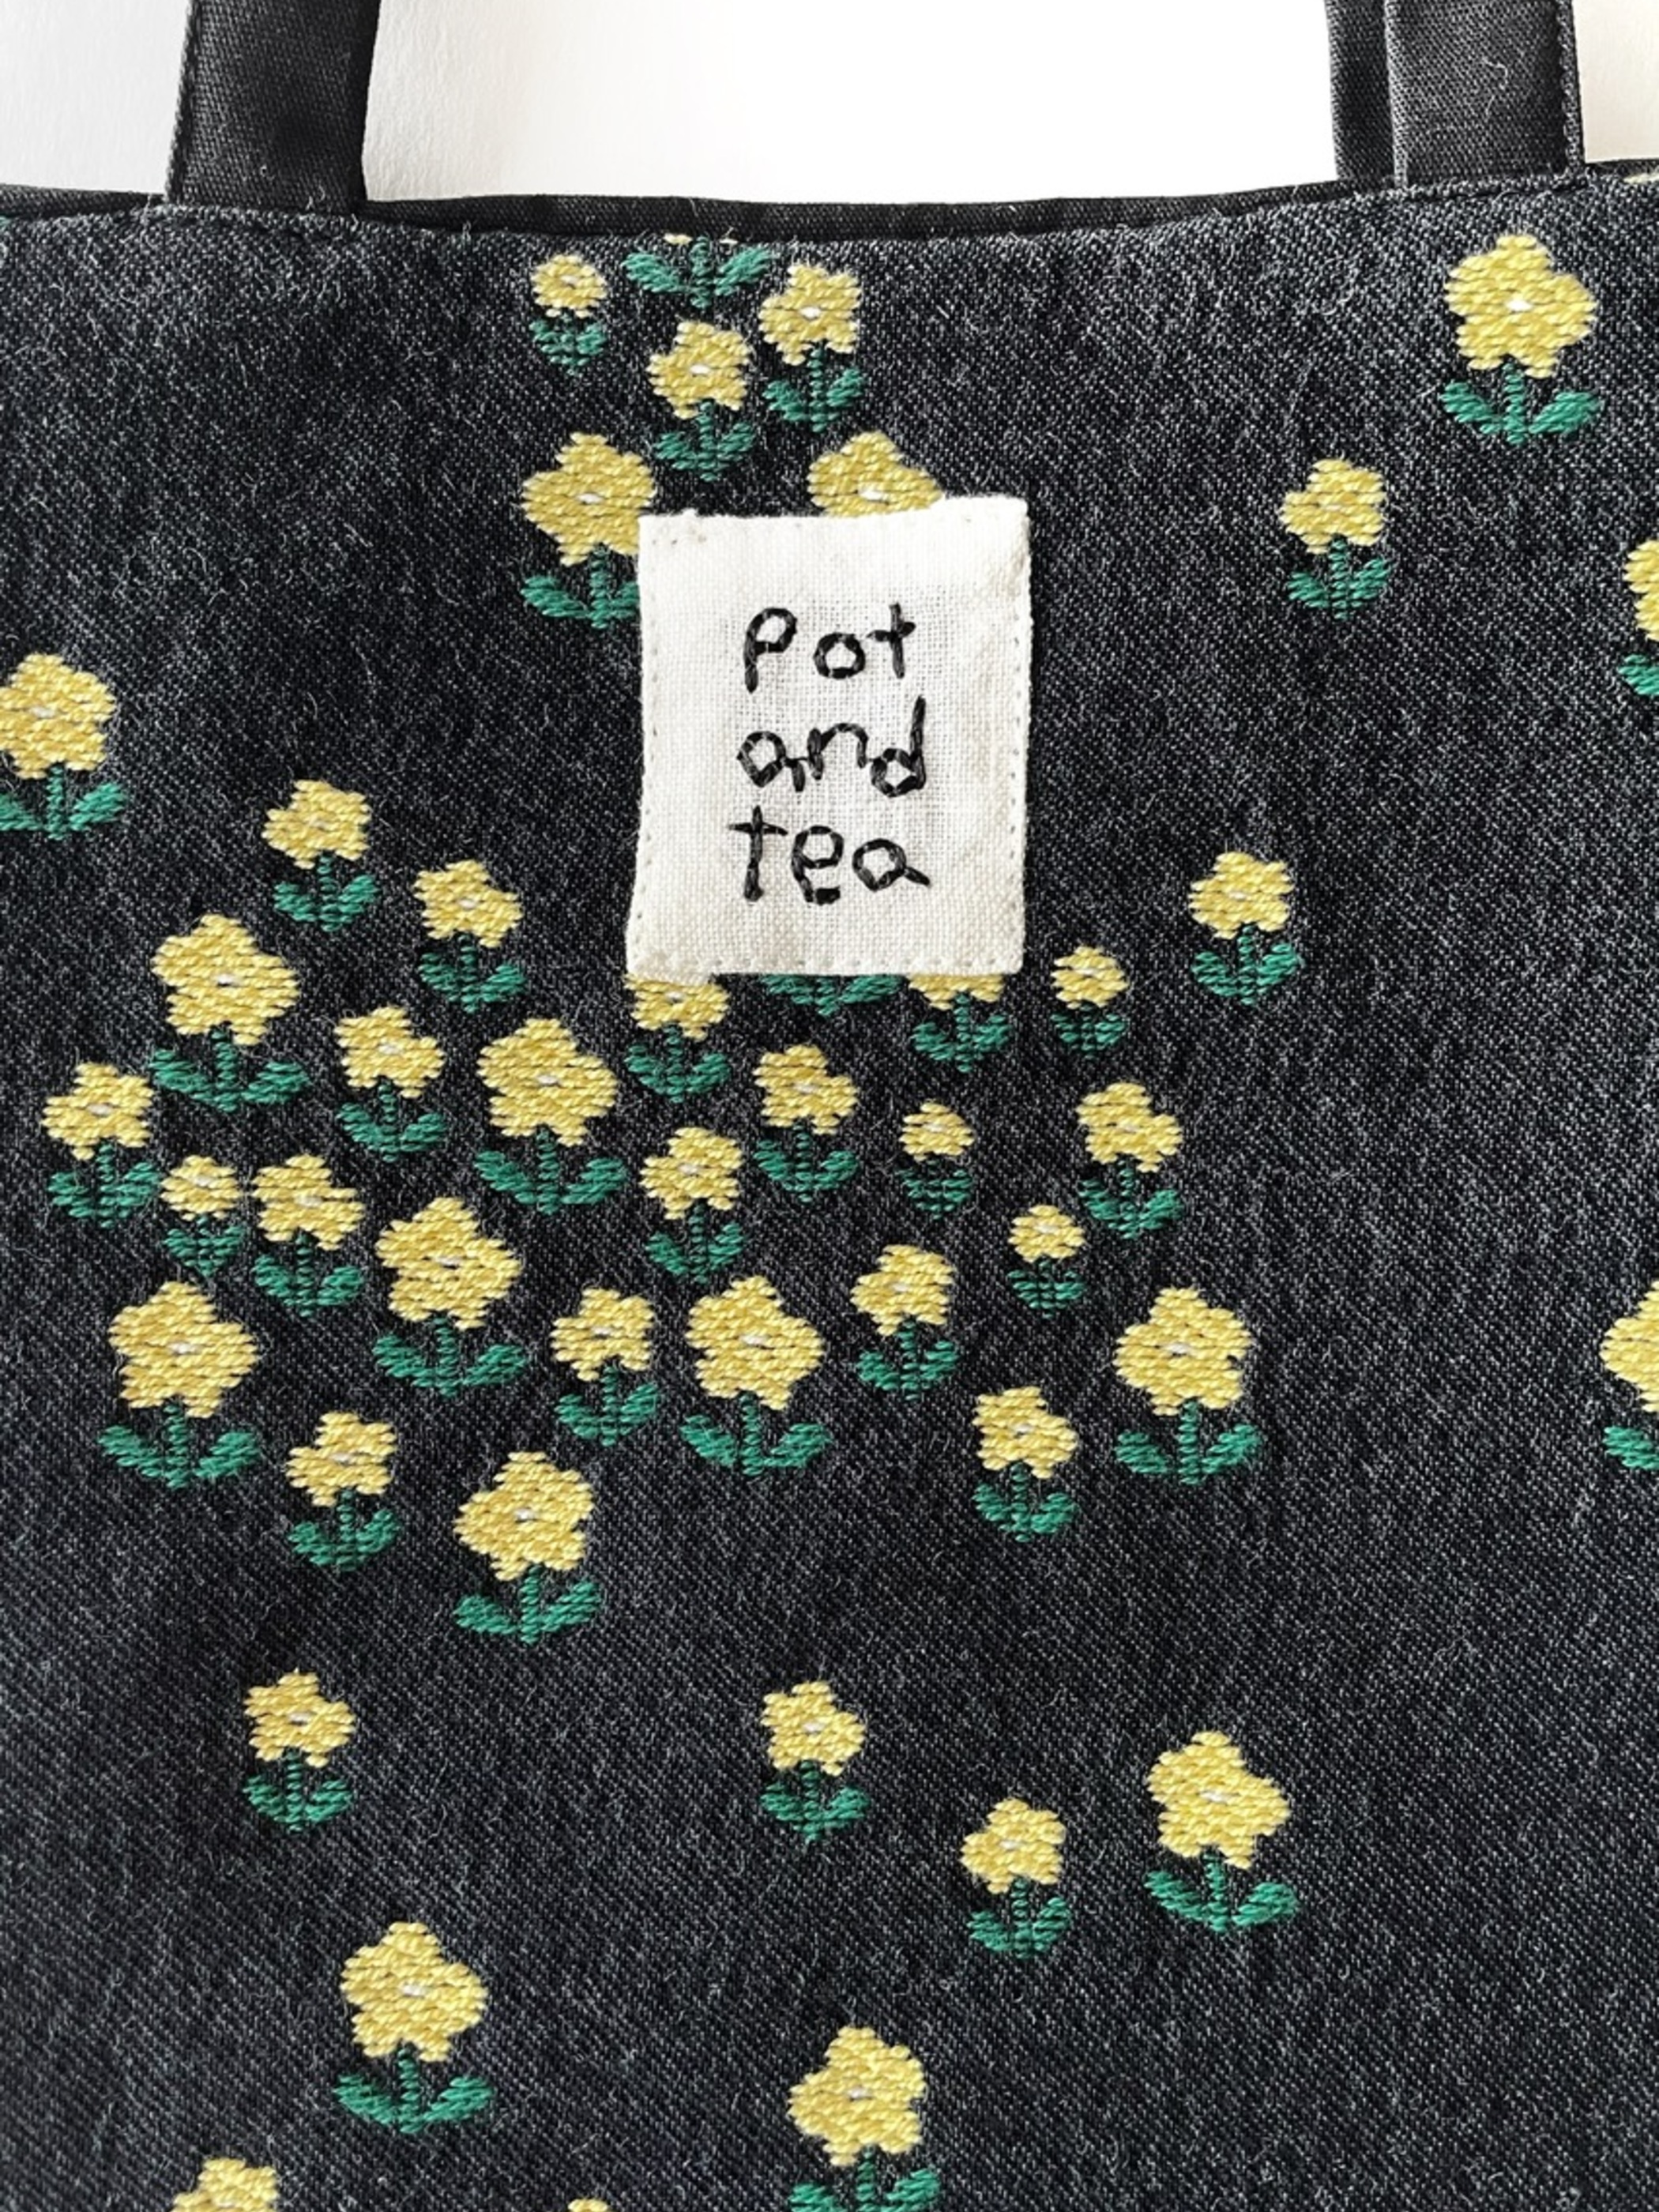 pot and tea 野原の小花のミニバッグ トートバッグ ポットアンドティー